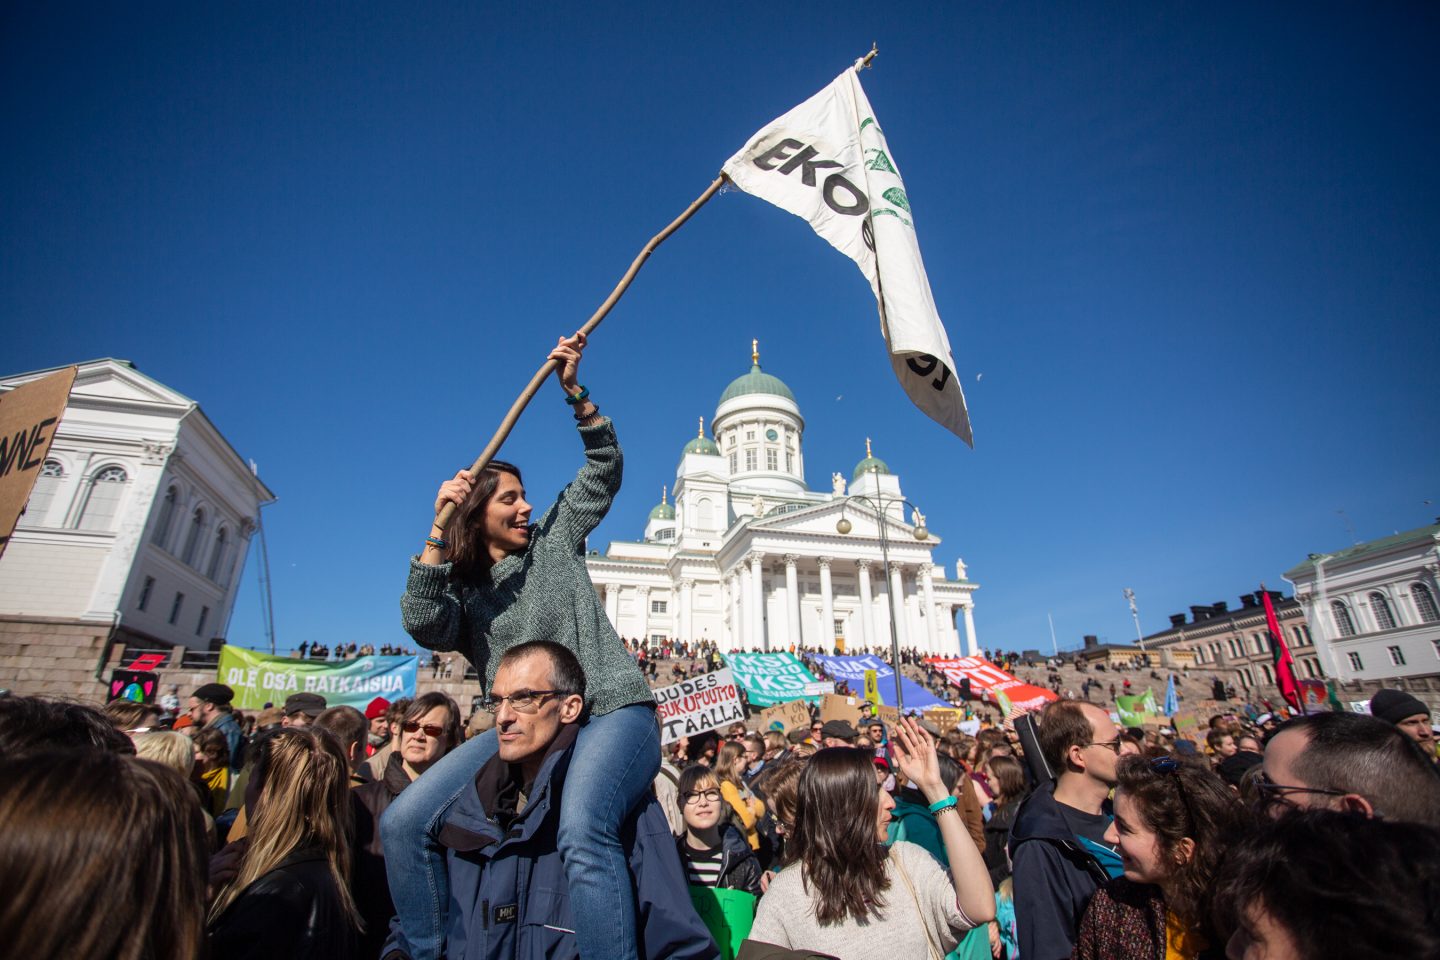 Mielenosoitus ilmastonmuutoksen hillitsemisen puolesta Helsingissä 6.4.2019. Kuva: Raisa Kyllikki Ranta